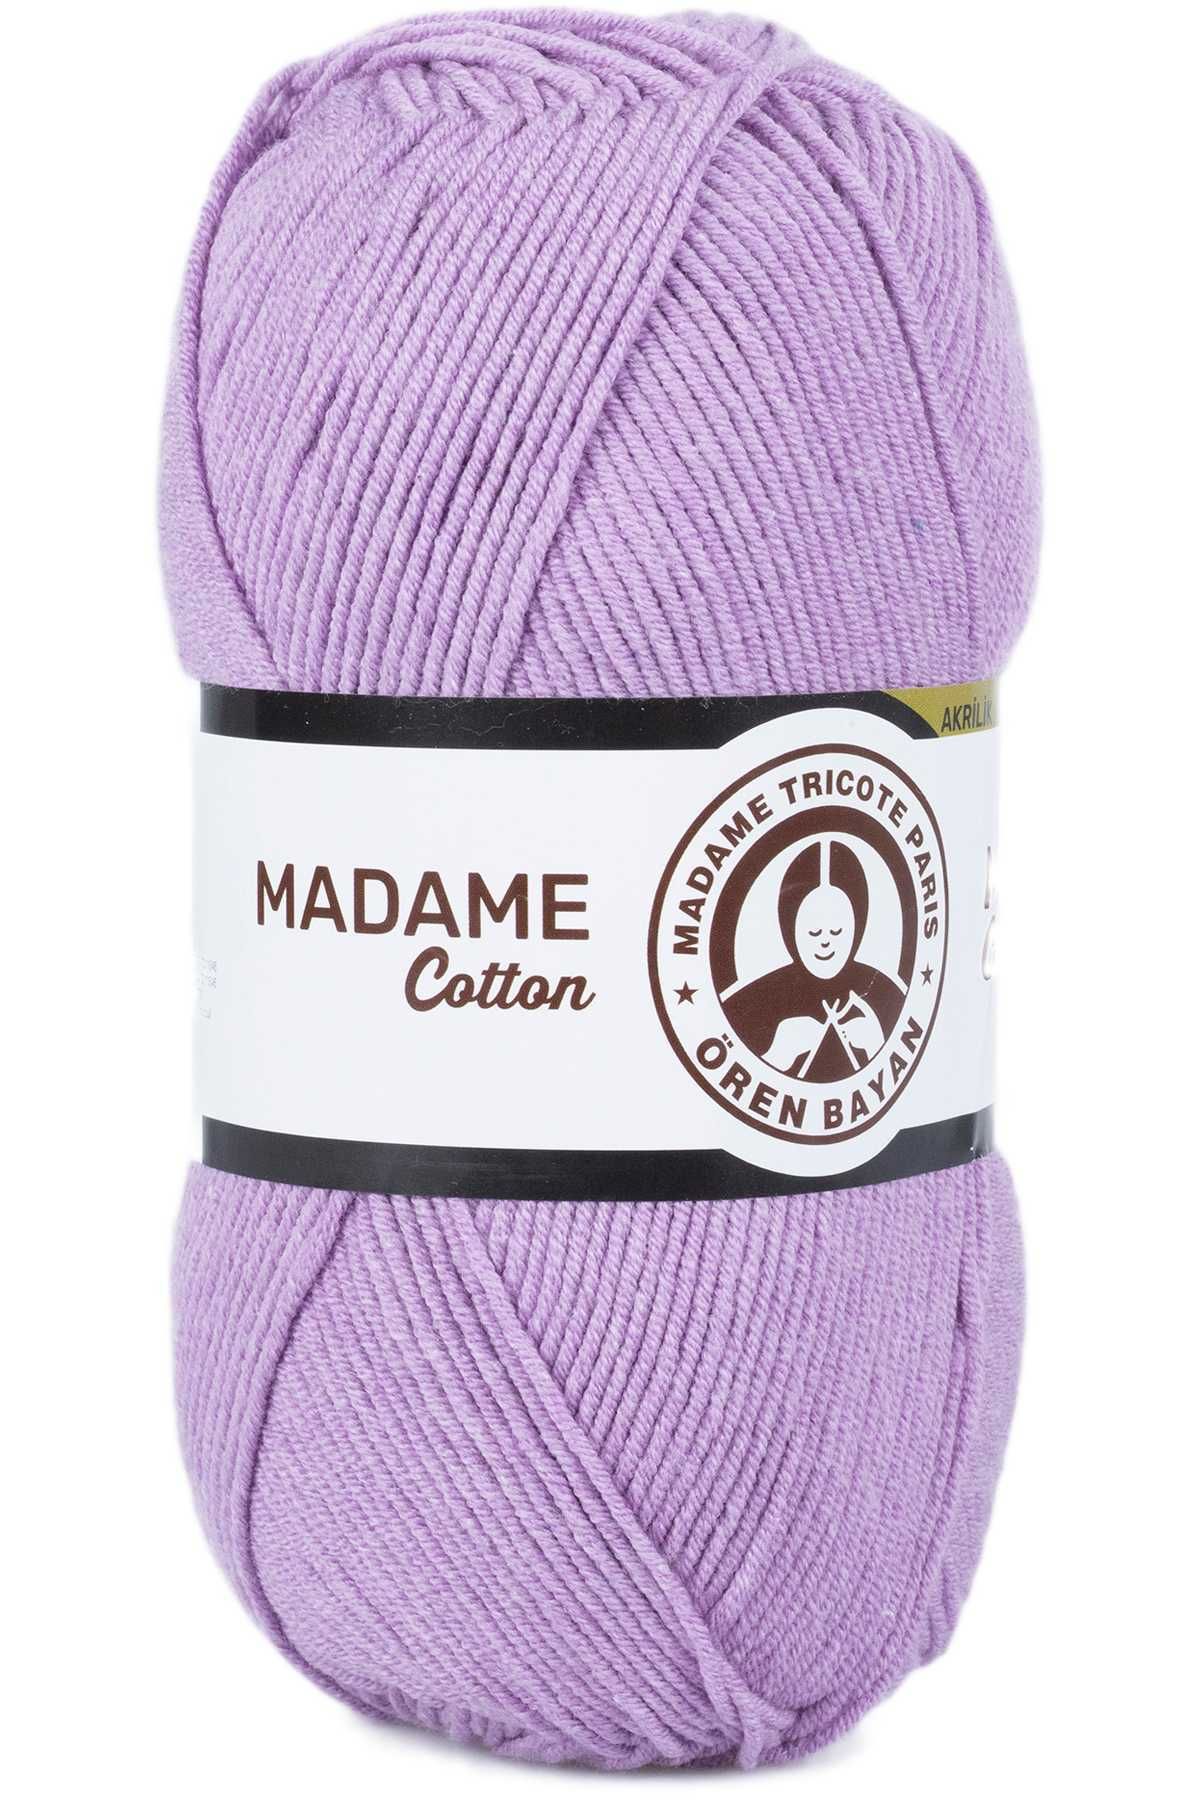 Ören Bayan Madame Cotton El Örgü İpi Yünü 100 gr 023 Lila